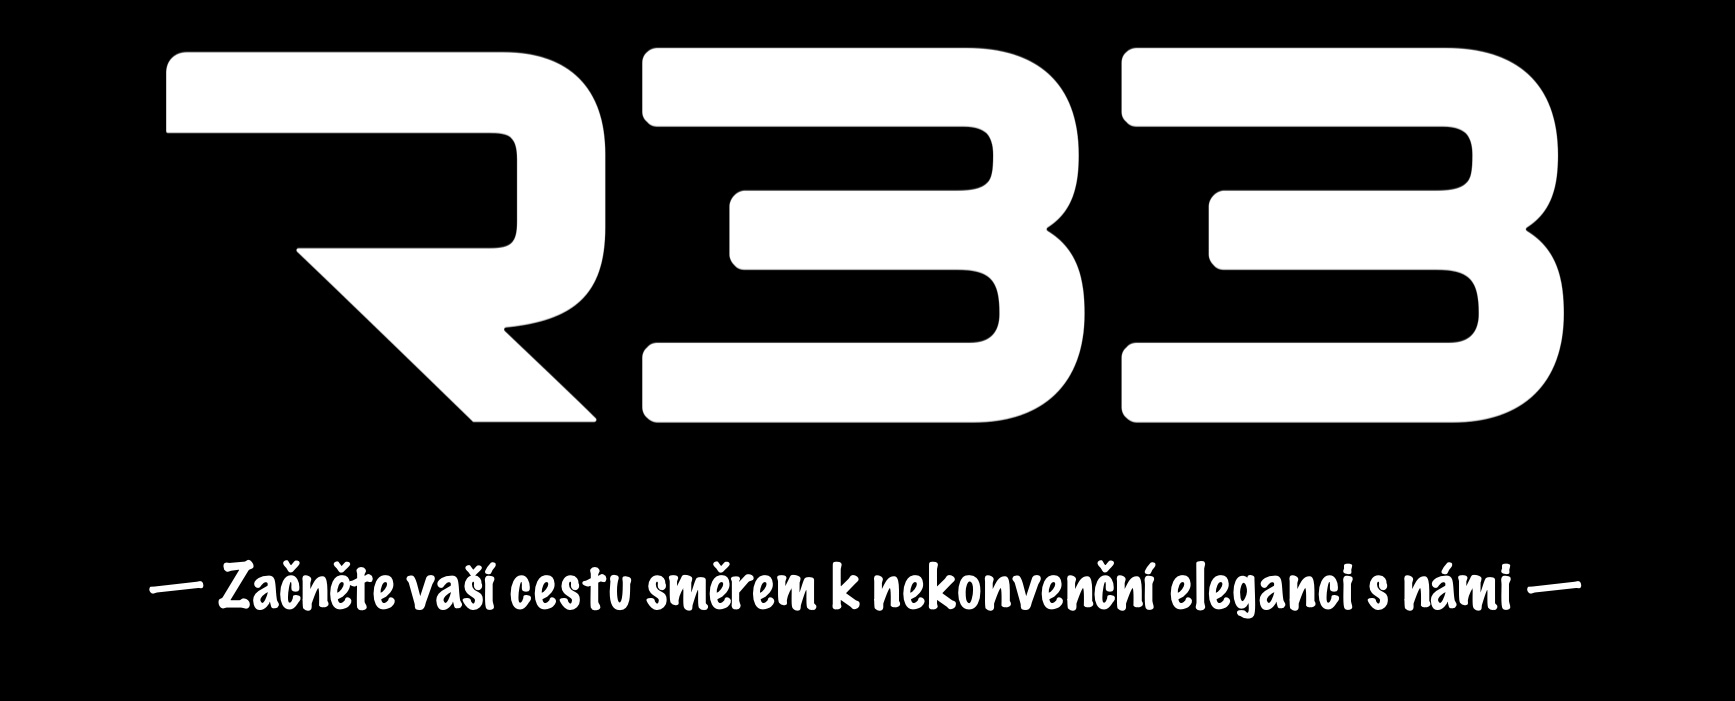 R33